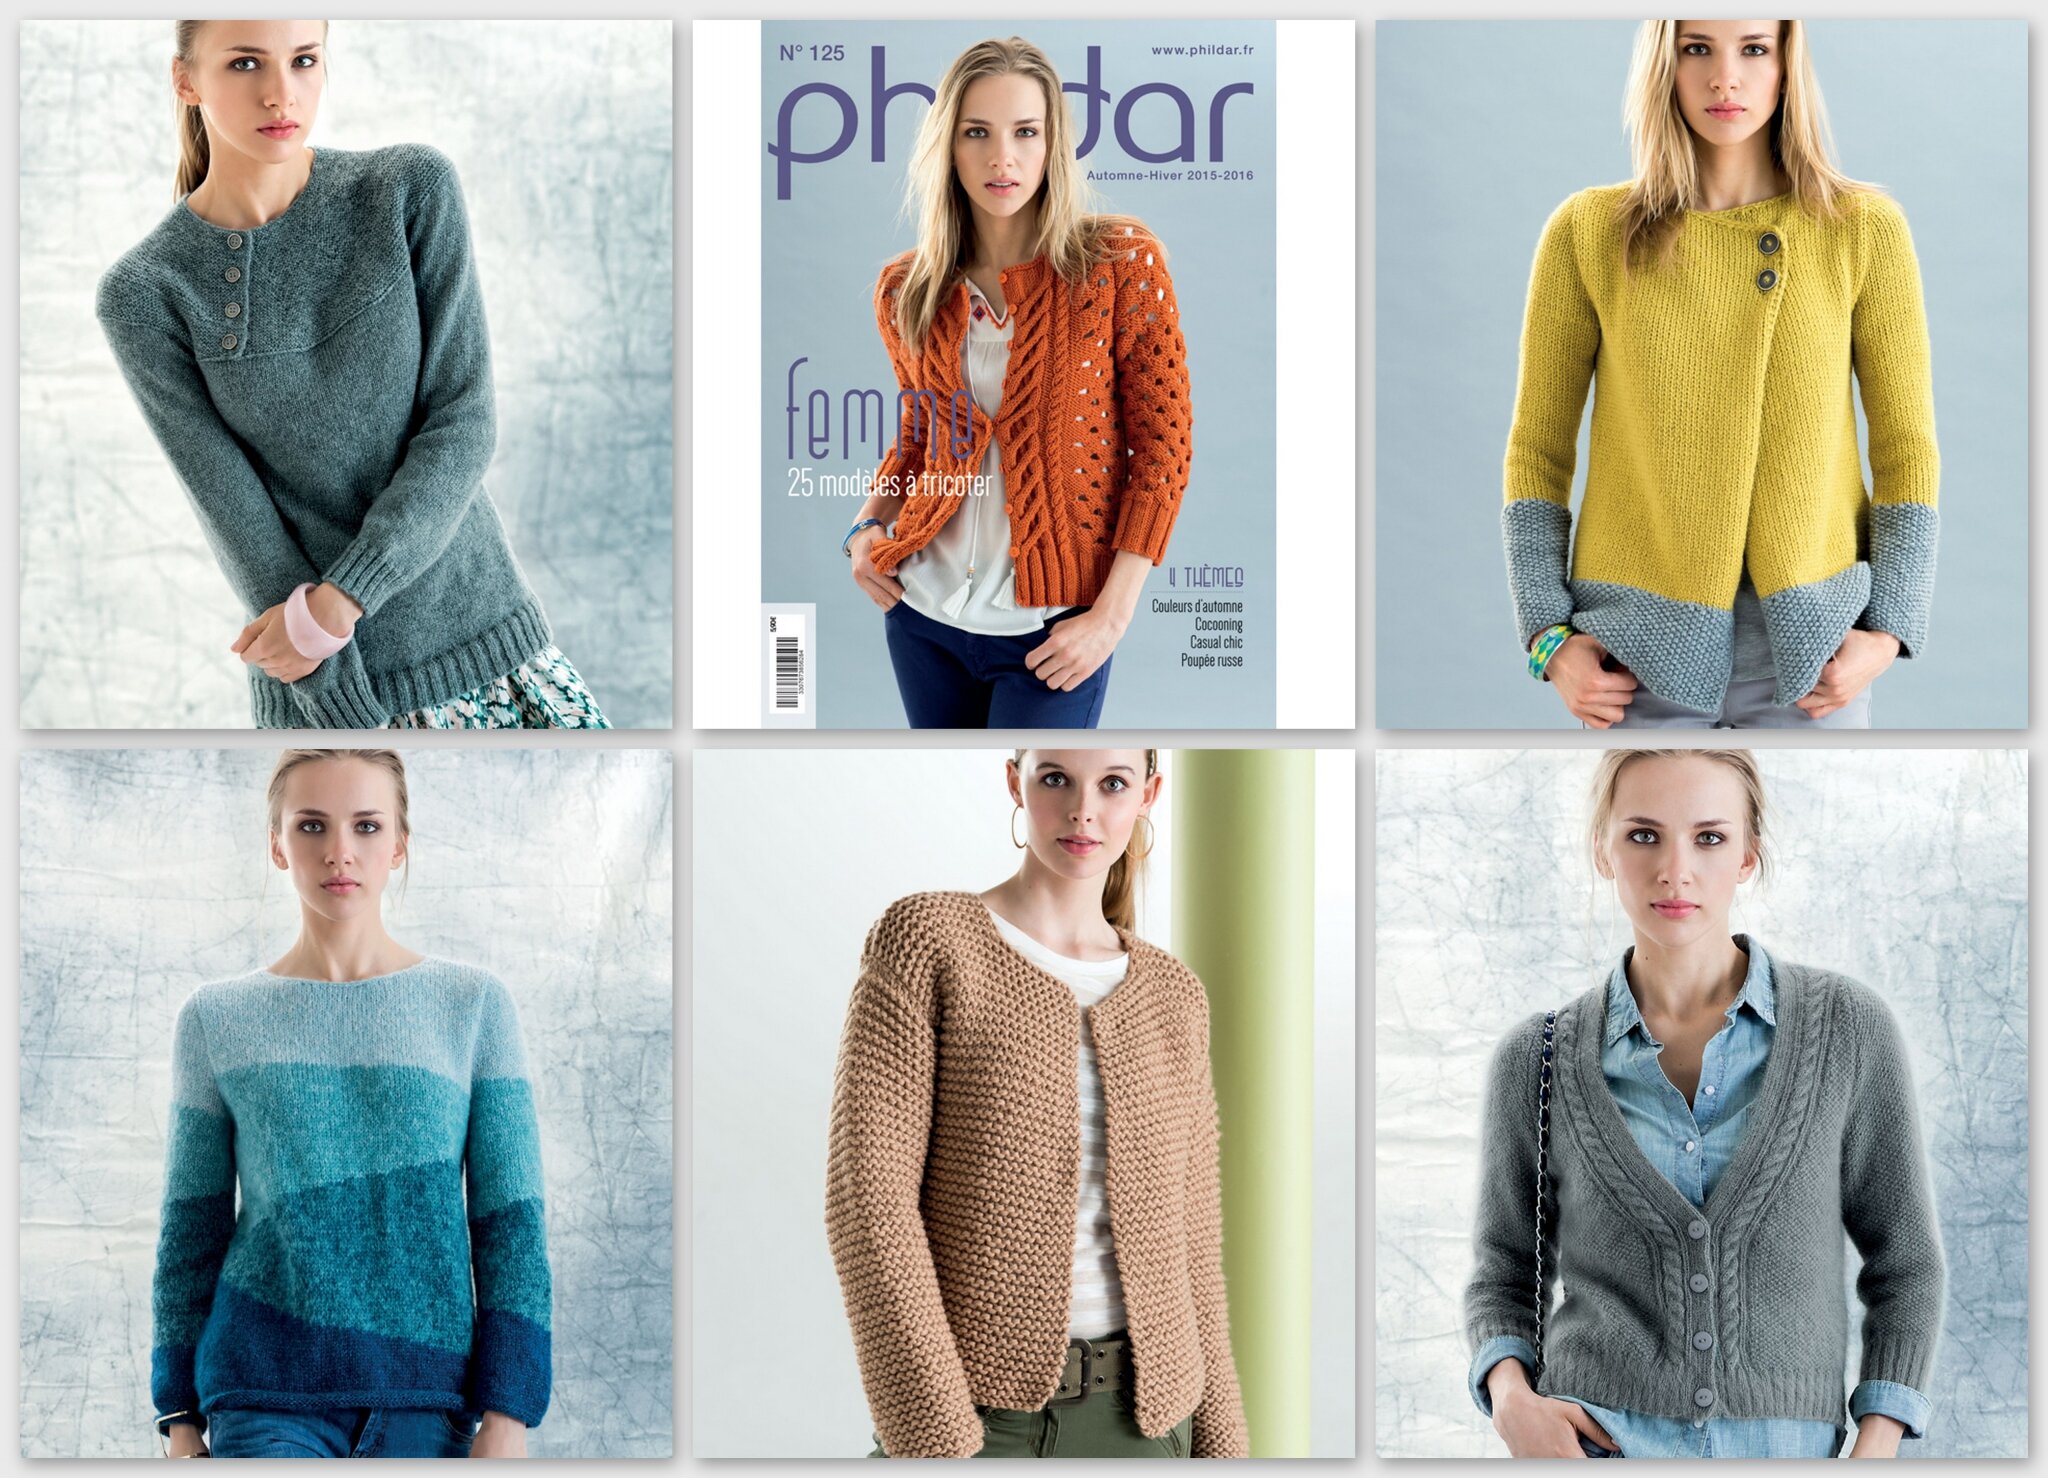 Modèle pull angora : patron tricot gratuit de Phildar